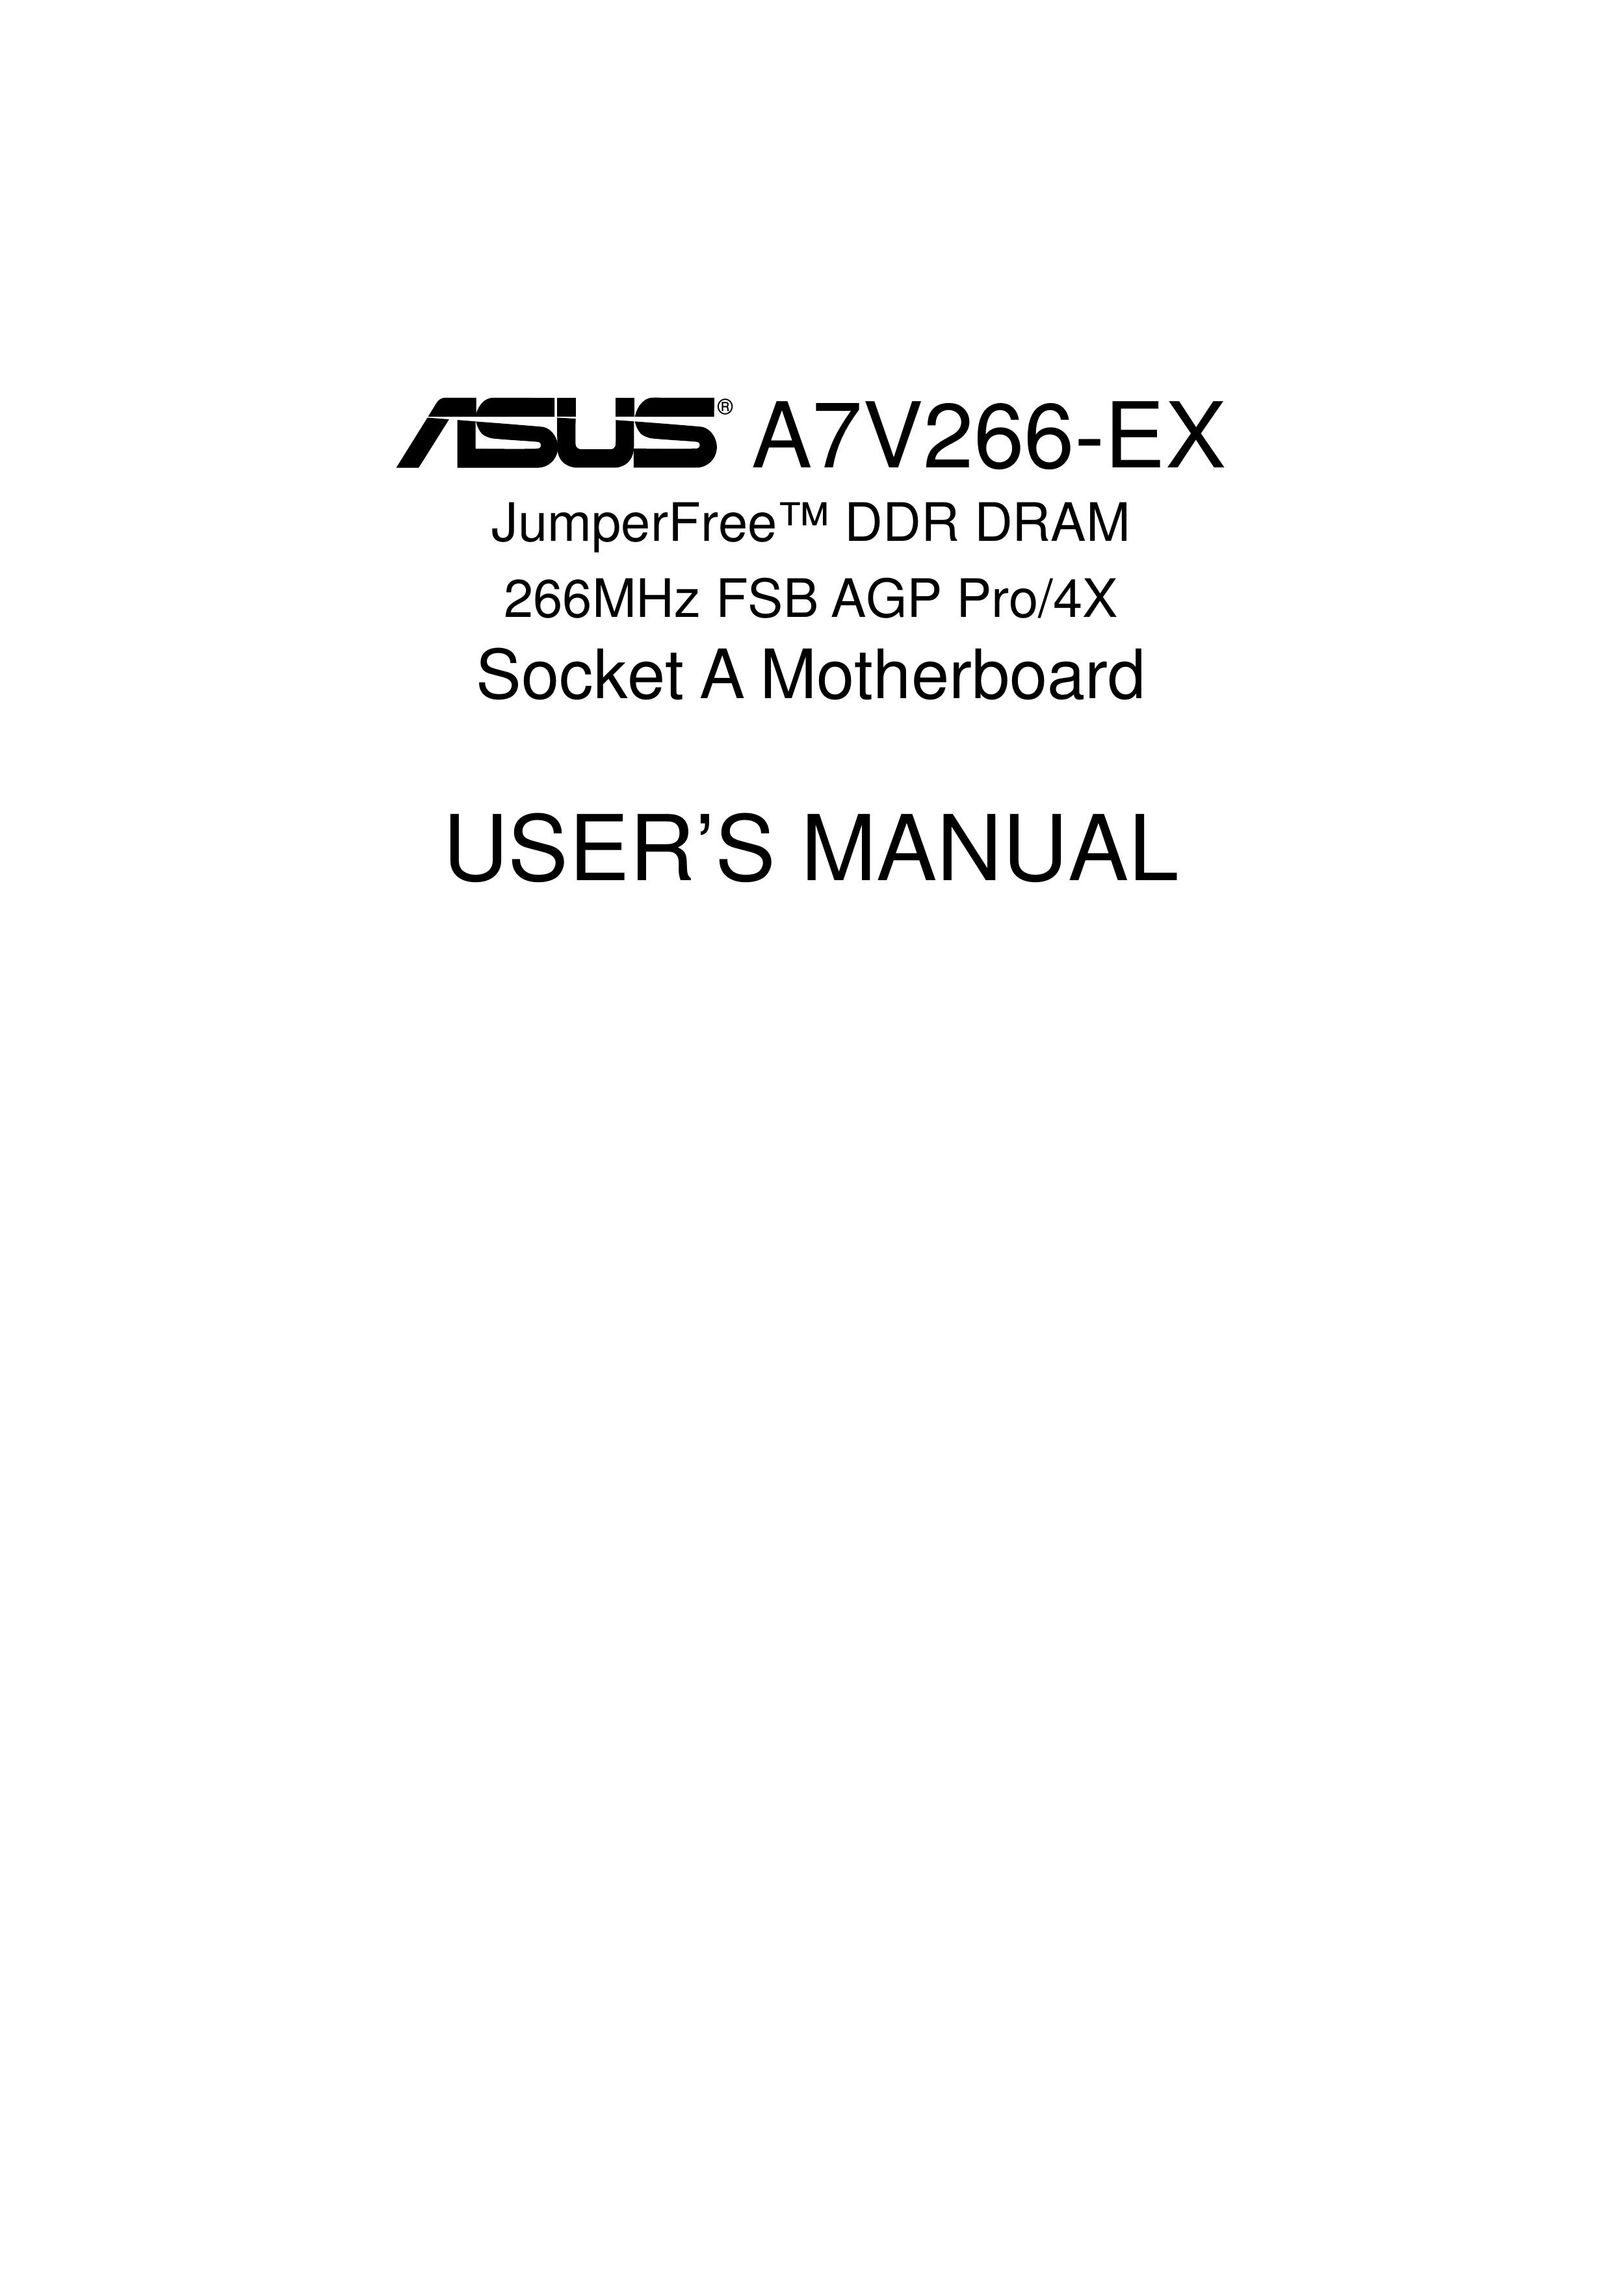 Asus A7V266-EX Personal Computer User Manual